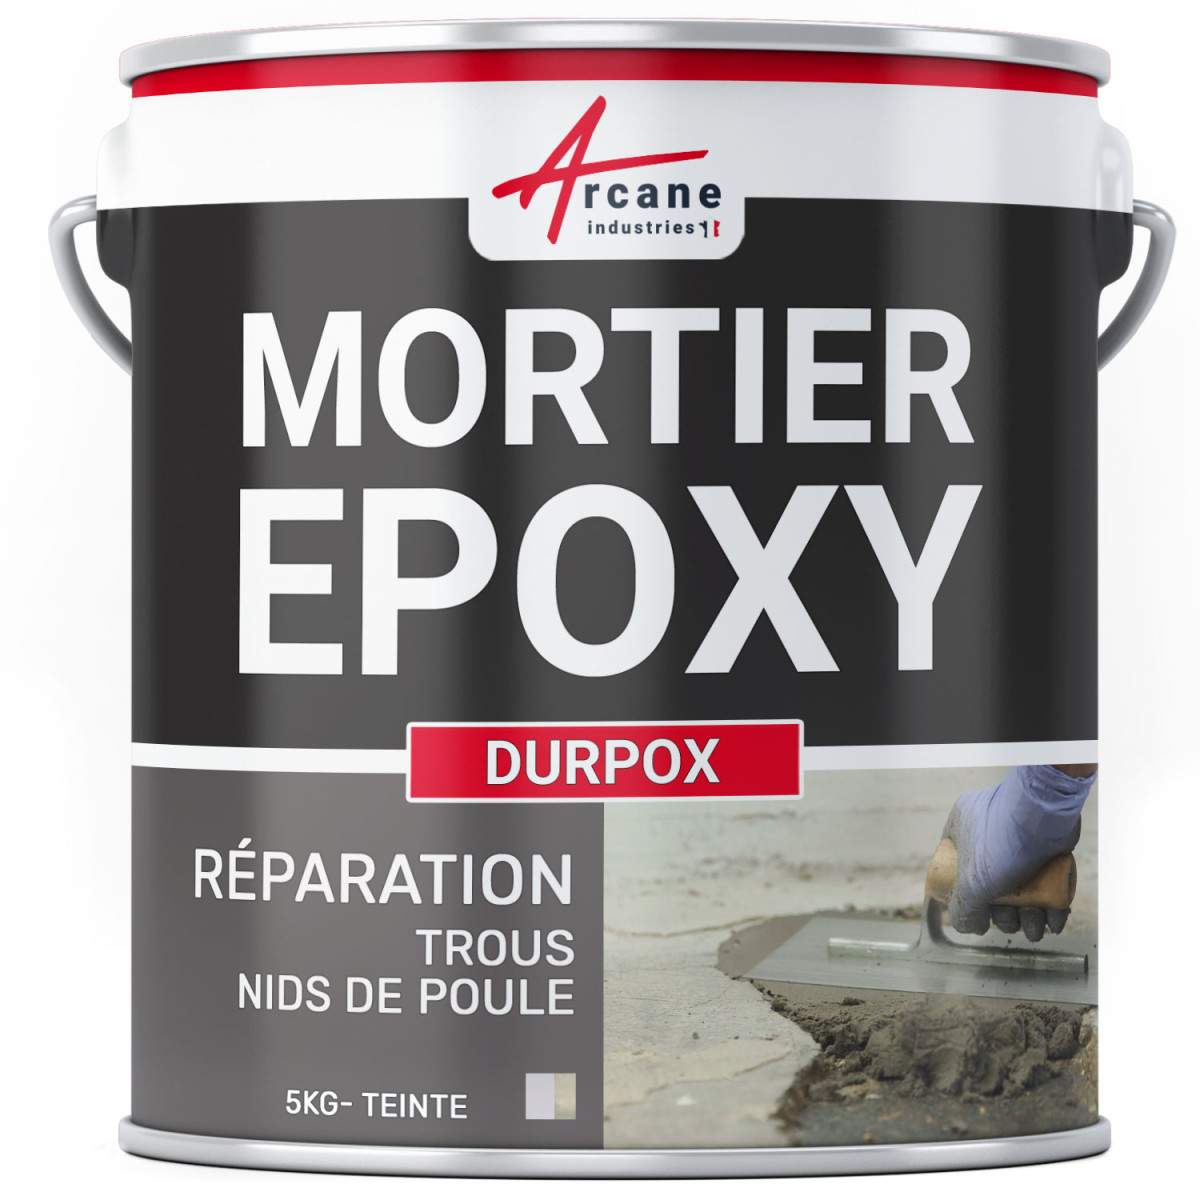 Mortier époxy de ragréage et réparation : DURPOX